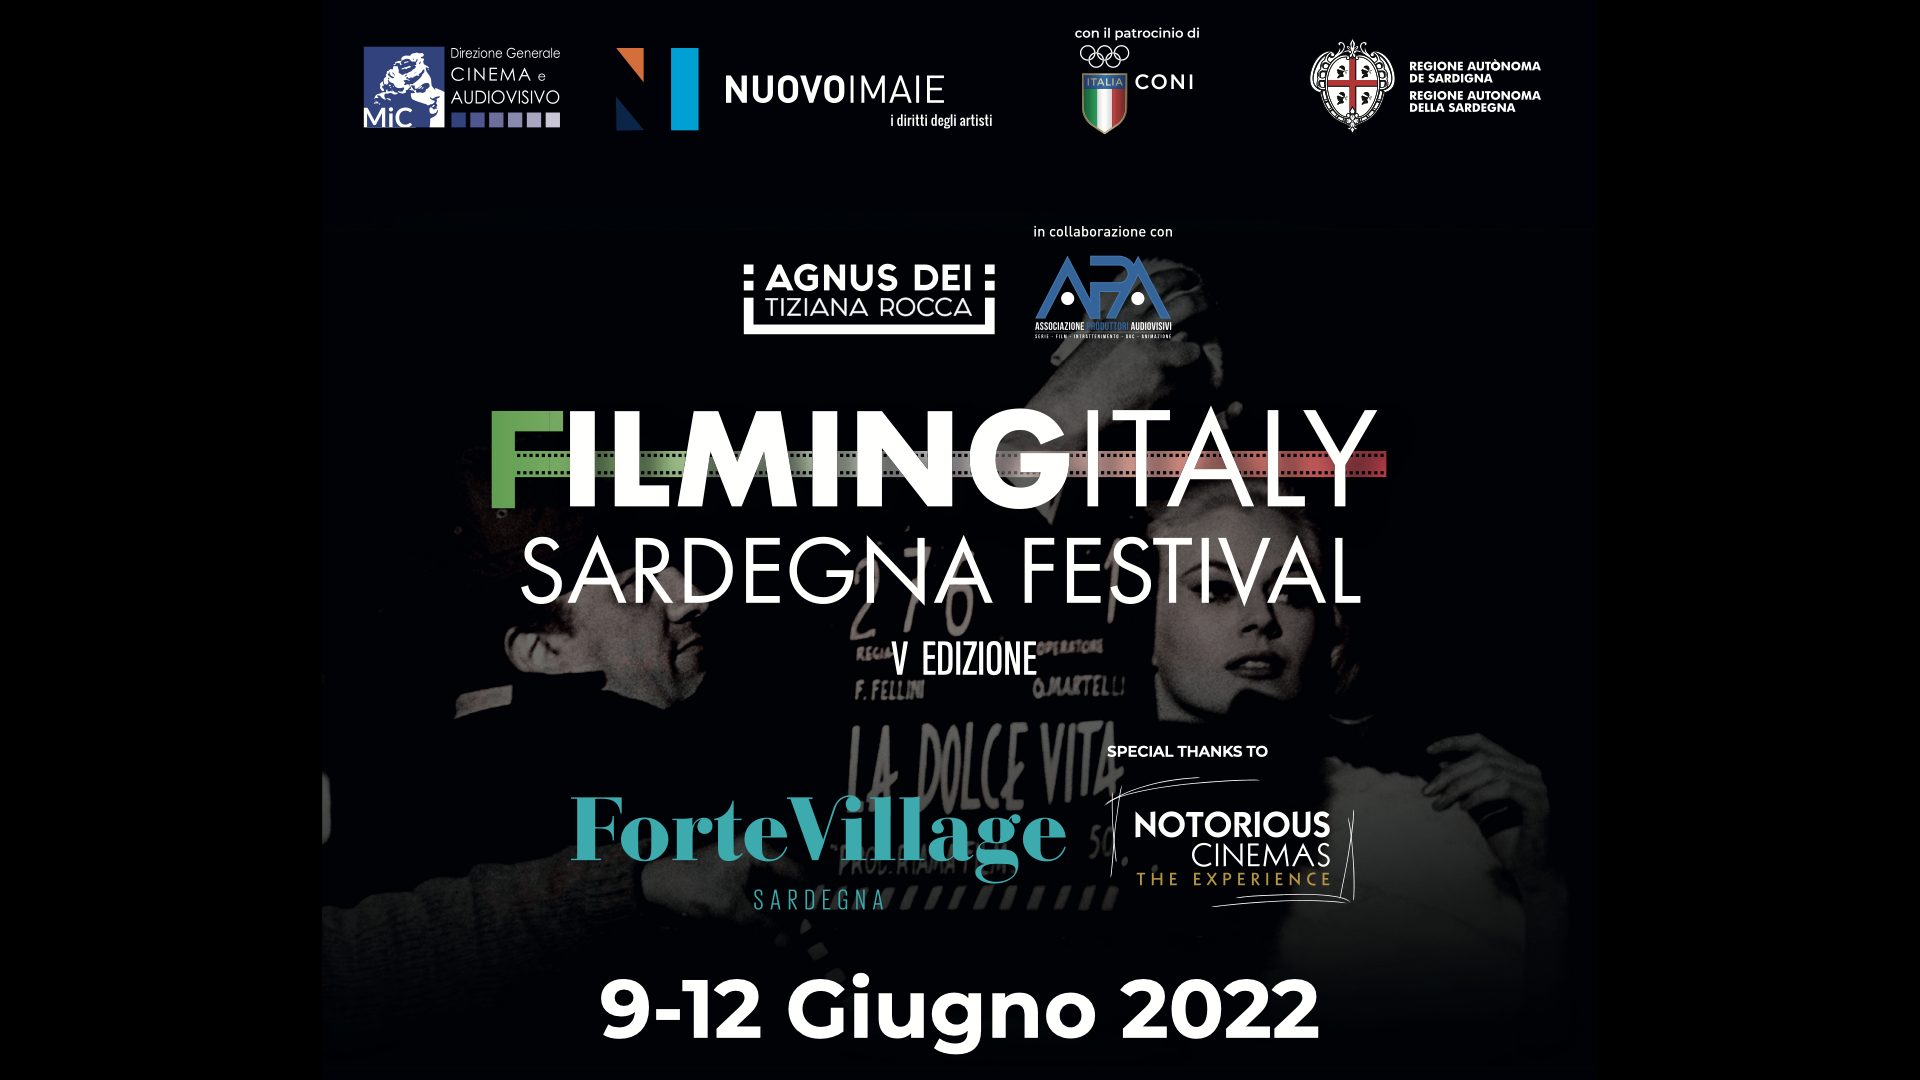 Via al Filming Italy Sardegna Festival: a Cagliari spazio ai giovani insieme al NUOVO IMAIE